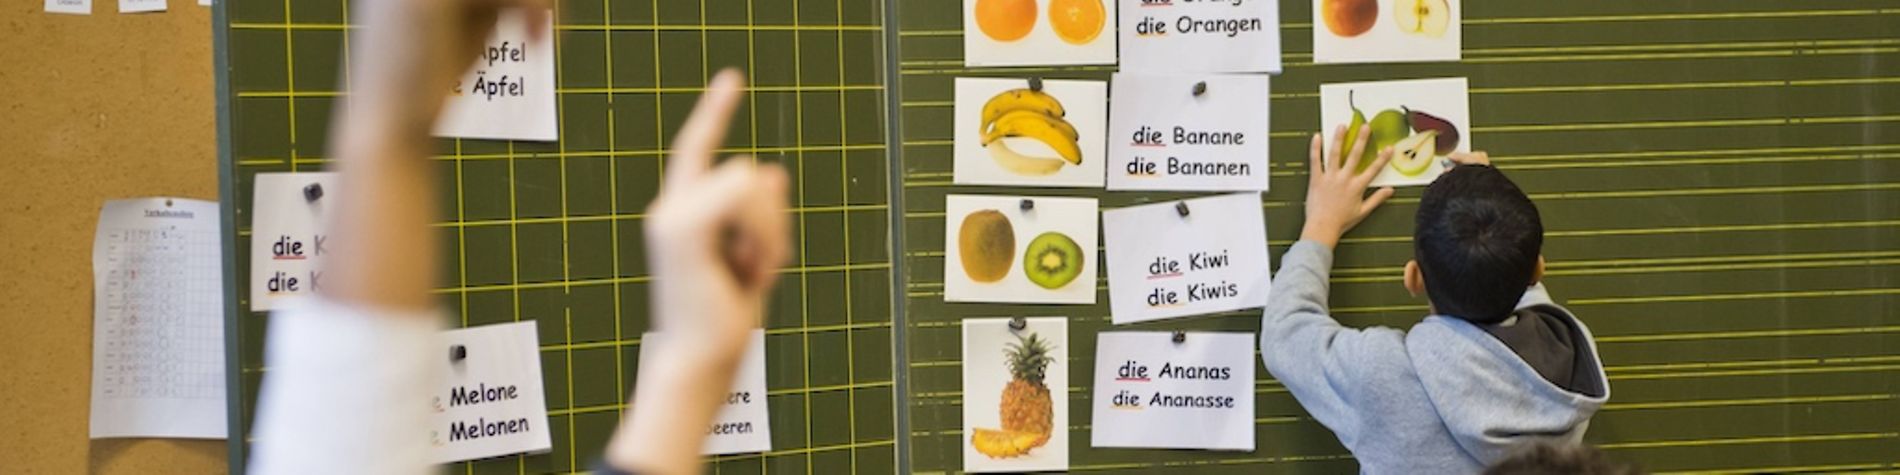 Kinder ordnen im Deutschunterricht Bilder das richtige Wort zu.